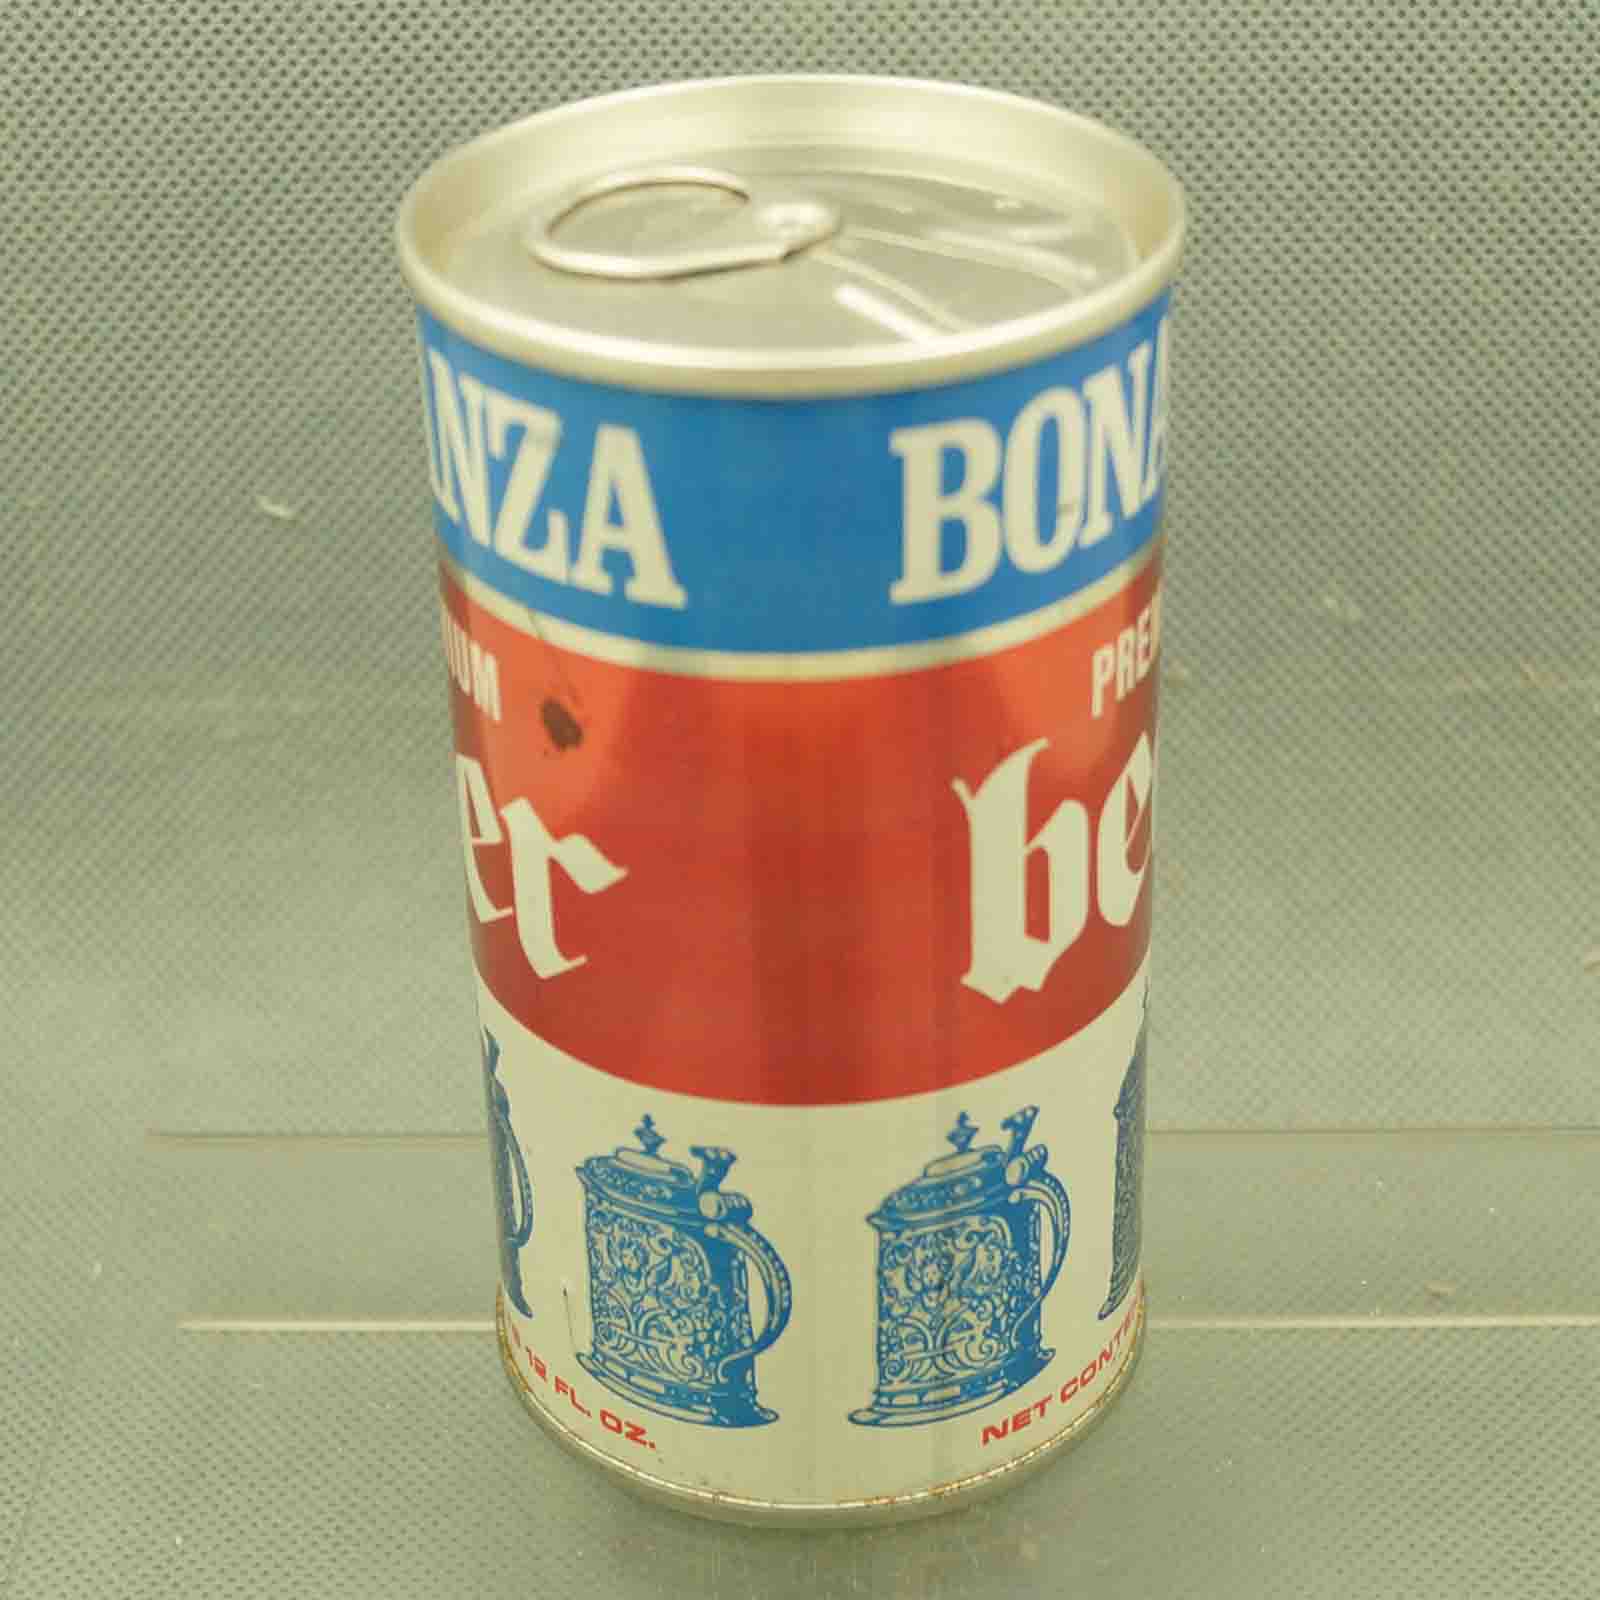 bonanza 44-36 pull tab beer can 2